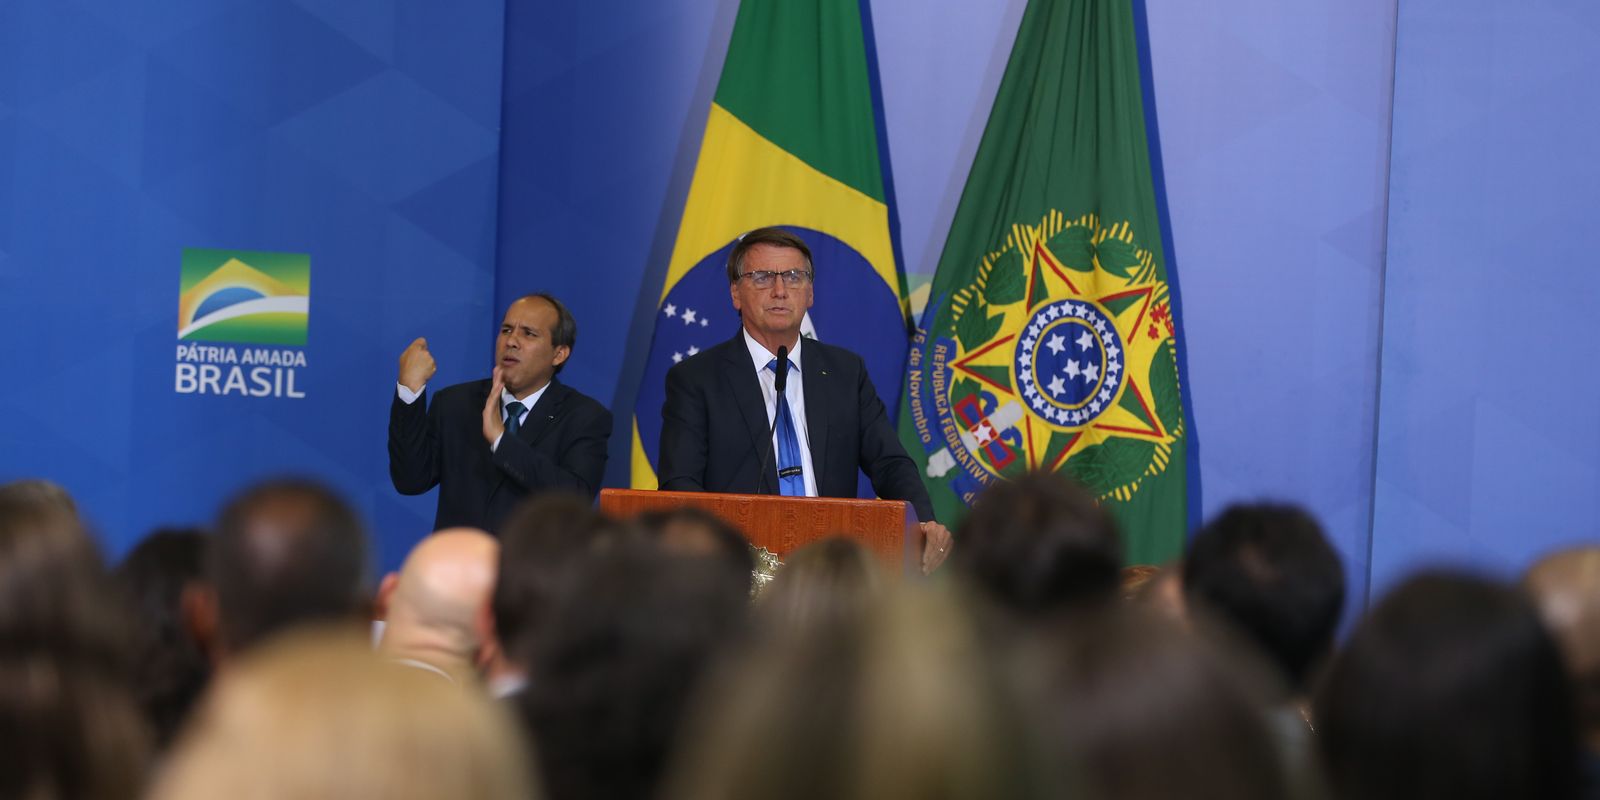 O presidente da República, Jair Bolsonaro, participa da cerimônia, Lançamento do Certificado de Crédito de Reciclagem - Recicla+ e do Plano Nacional de Resíduos Sólidos